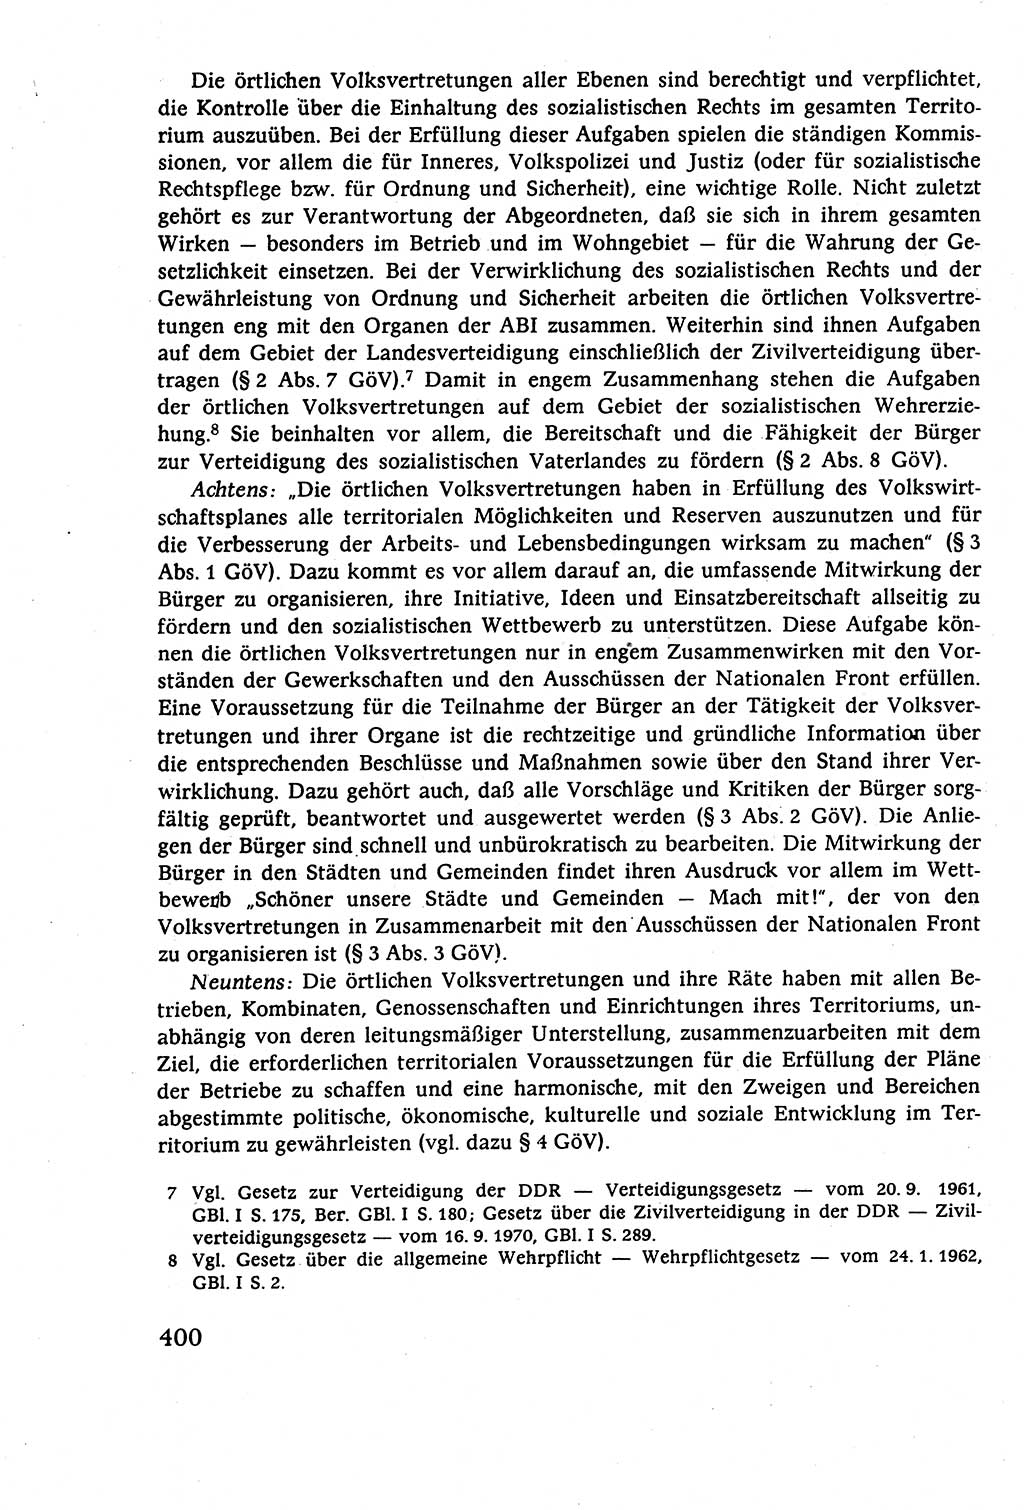 Staatsrecht der DDR (Deutsche Demokratische Republik), Lehrbuch 1977, Seite 400 (St.-R. DDR Lb. 1977, S. 400)